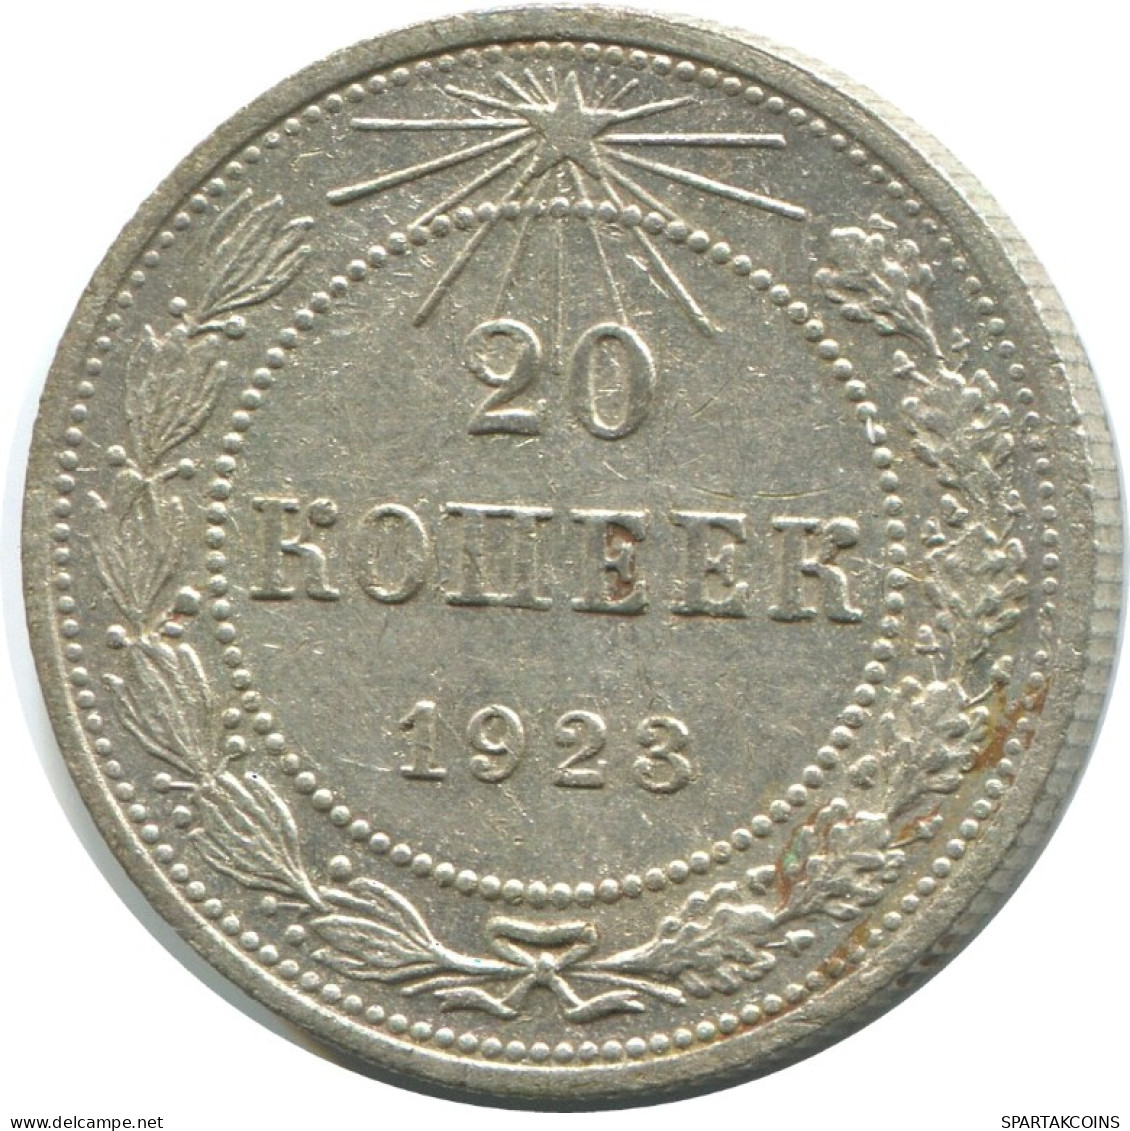 20 KOPEKS 1923 RUSSLAND RUSSIA RSFSR SILBER Münze HIGH GRADE #AF419.4.D.A - Russia